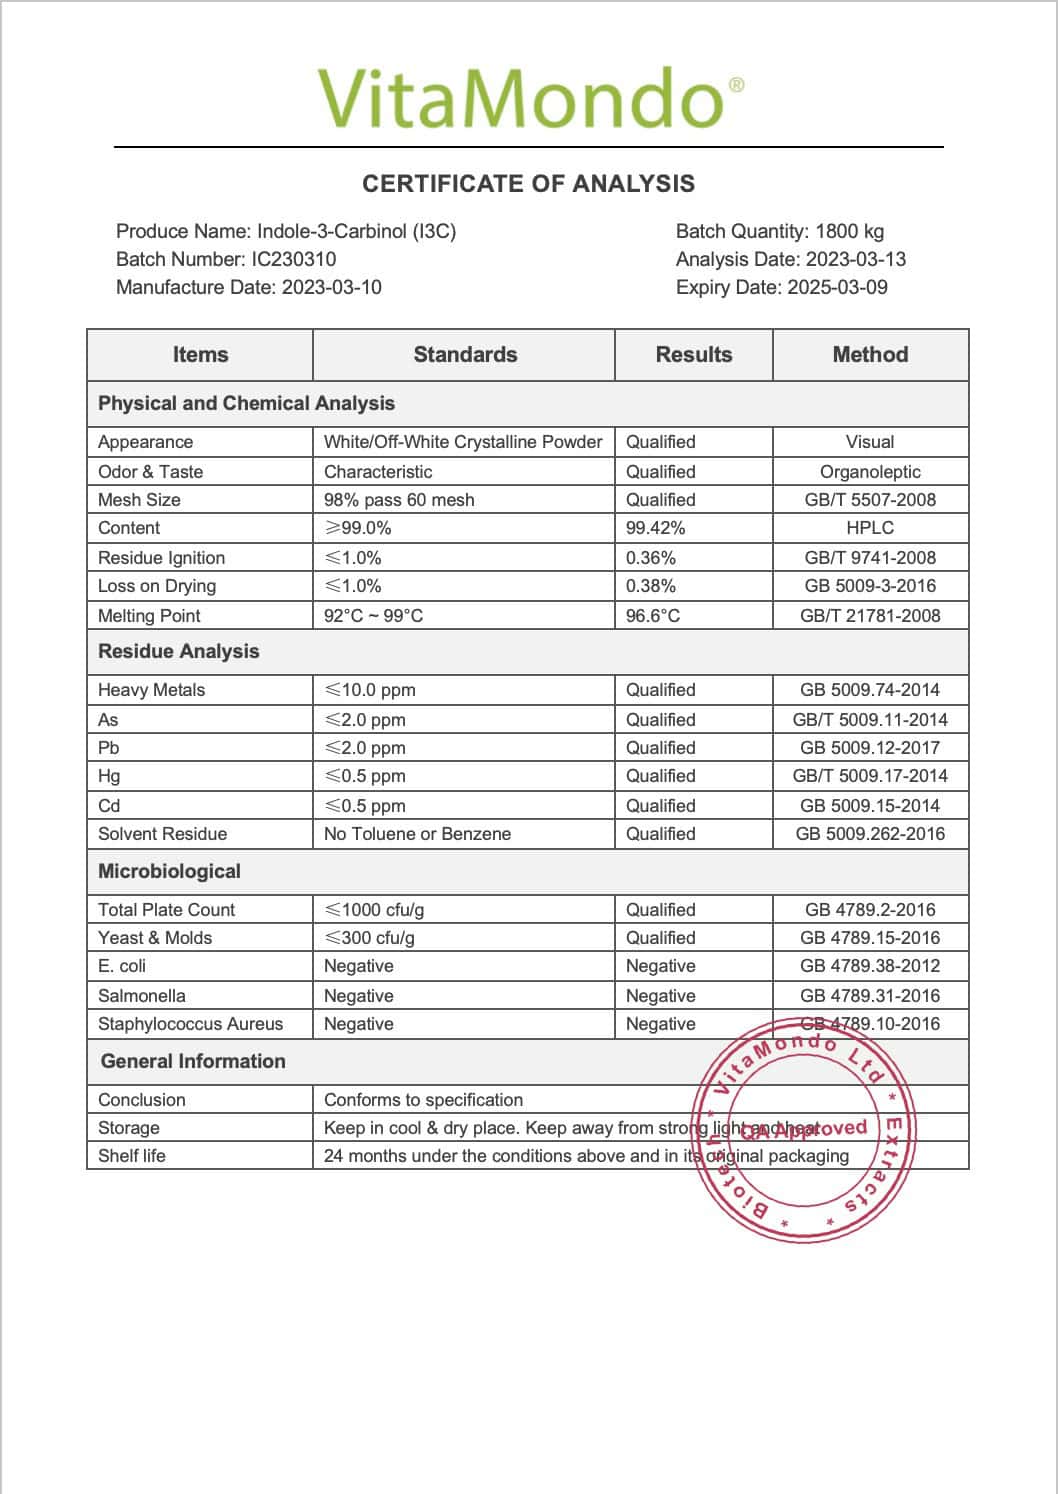 Premium Indole-3-Carbinol I3C 99% COA VitaMondo stamped